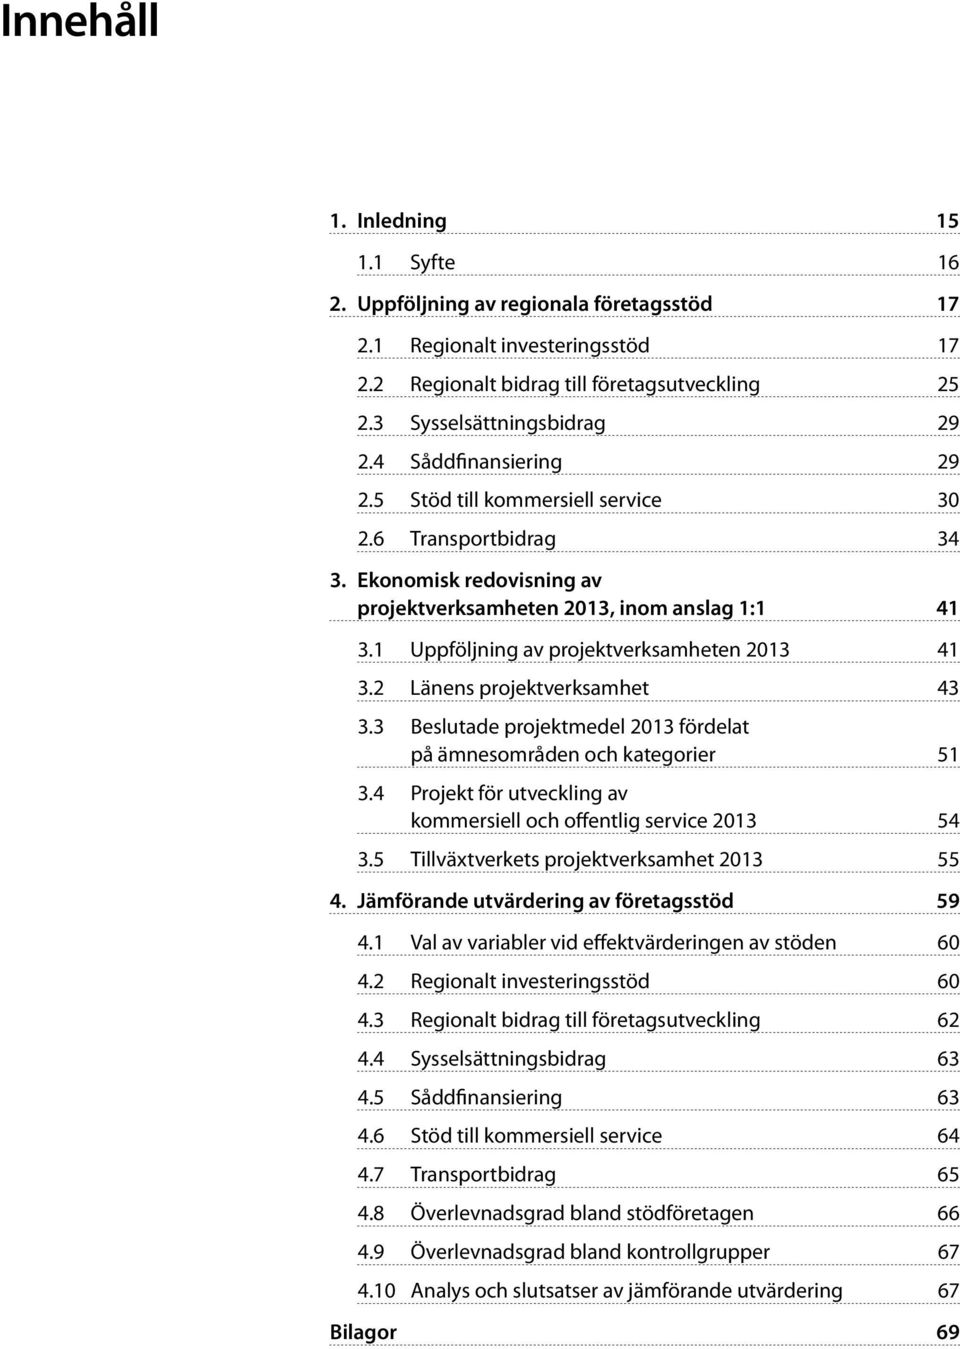 1 Uppföljning av projektverksamheten 2013 41 3.2 Länens projektverksamhet 43 3.3 Beslutade projektmedel 2013 fördelat på ämnesområden och kategorier 51 3.